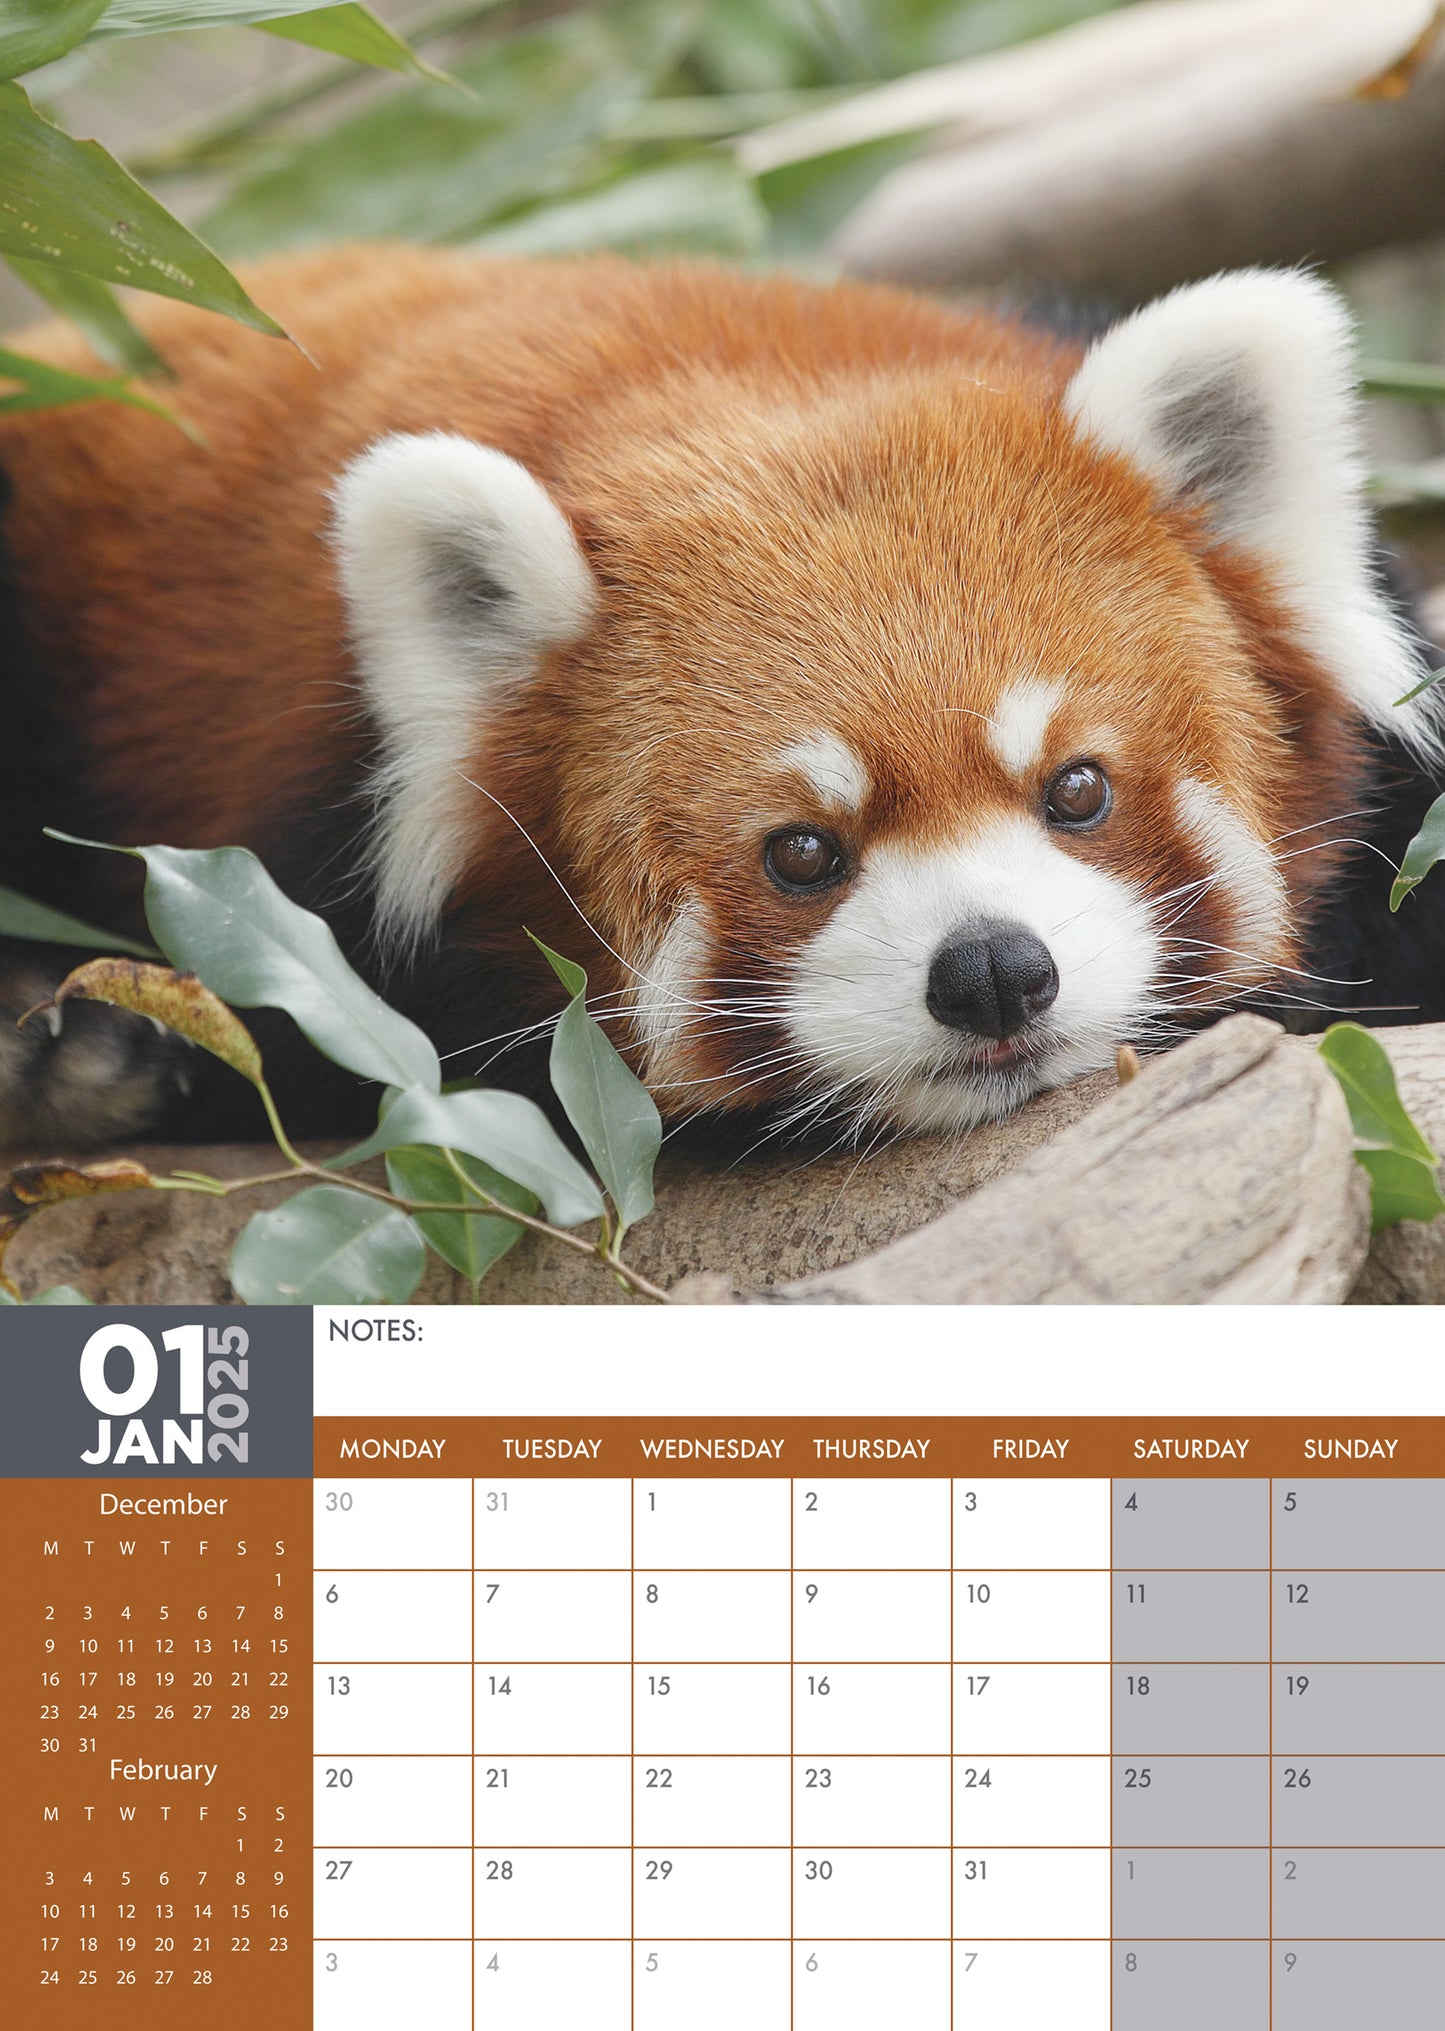 Red Panda Calendar 2025